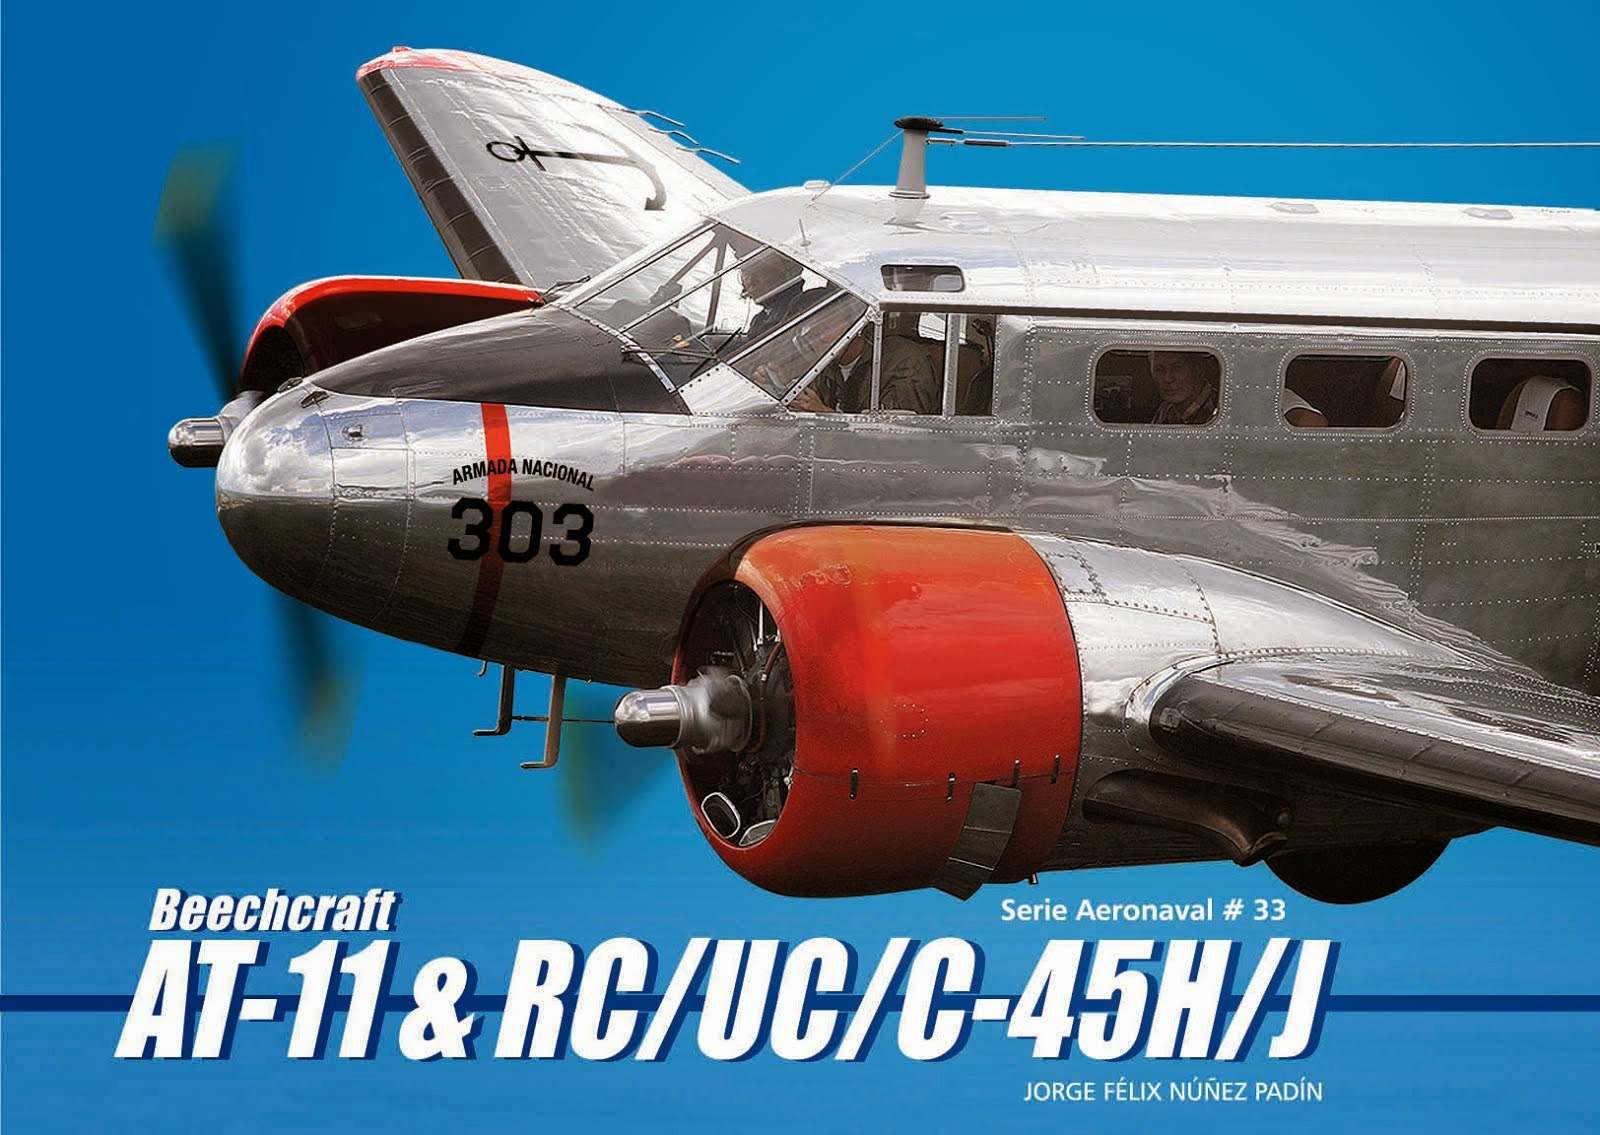 Serie Aeronaval N°33 “Beechcraft AT-11 & RC/UC/C-45H/J”